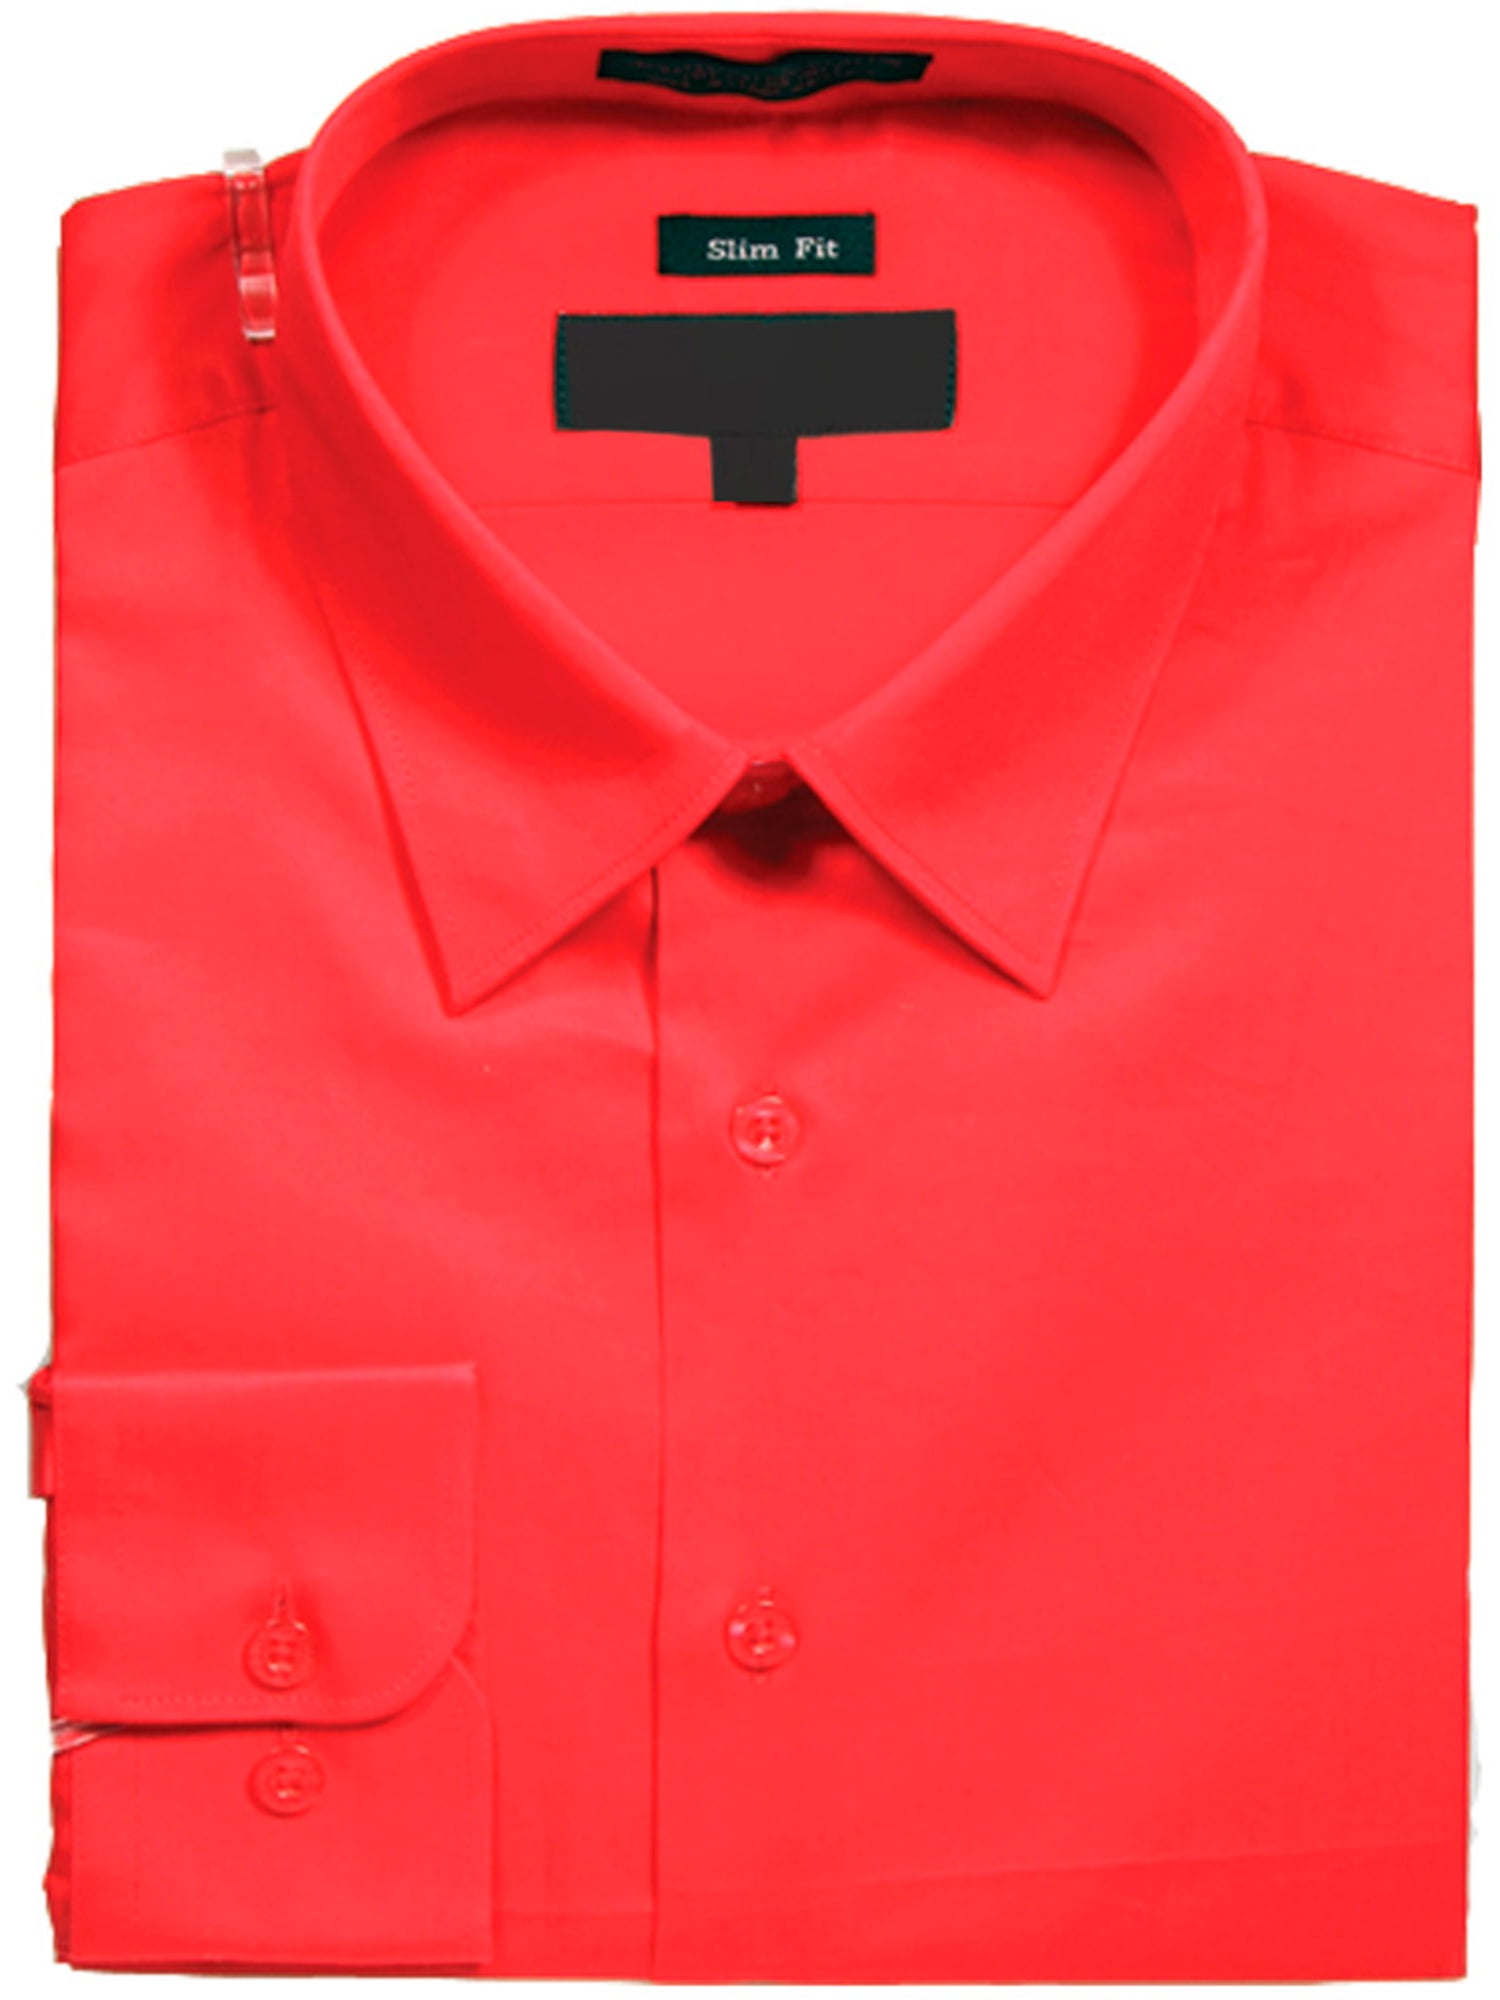 Sunrise Outlet - Men's Slim Fit Basic Solid Color Dress Shirt with ...